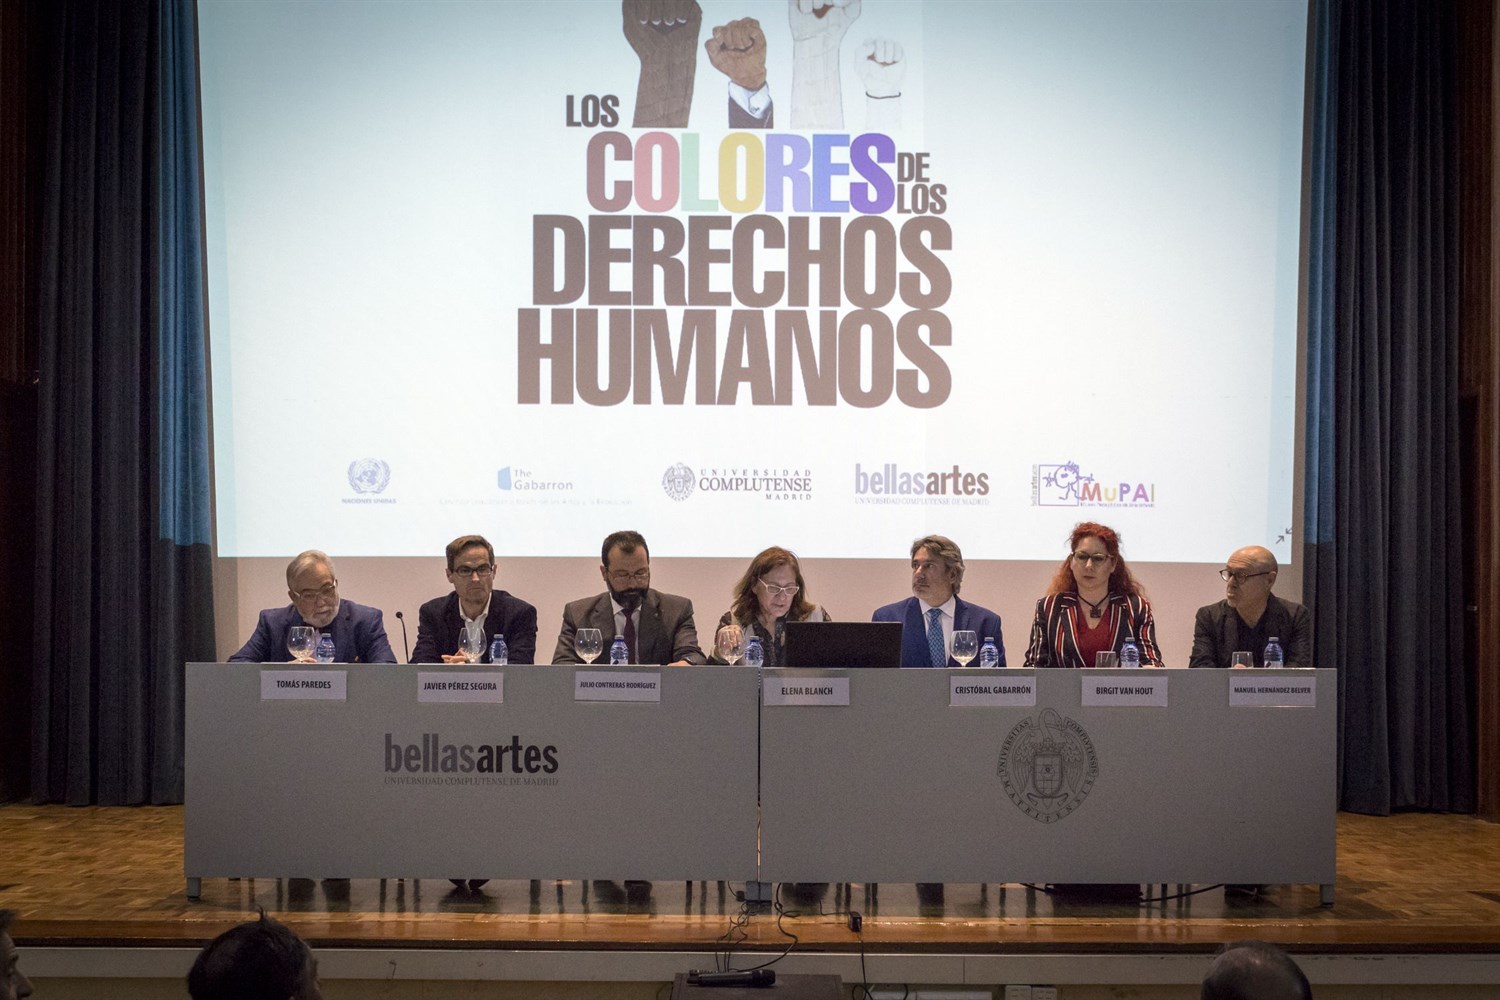 L-R: Tomás Paredes, Javier Pérez Segura, Julio Contreras, Elena Blanca, Cris Gabarrón, Manuel Hernández Belver, and Birgit van Hout